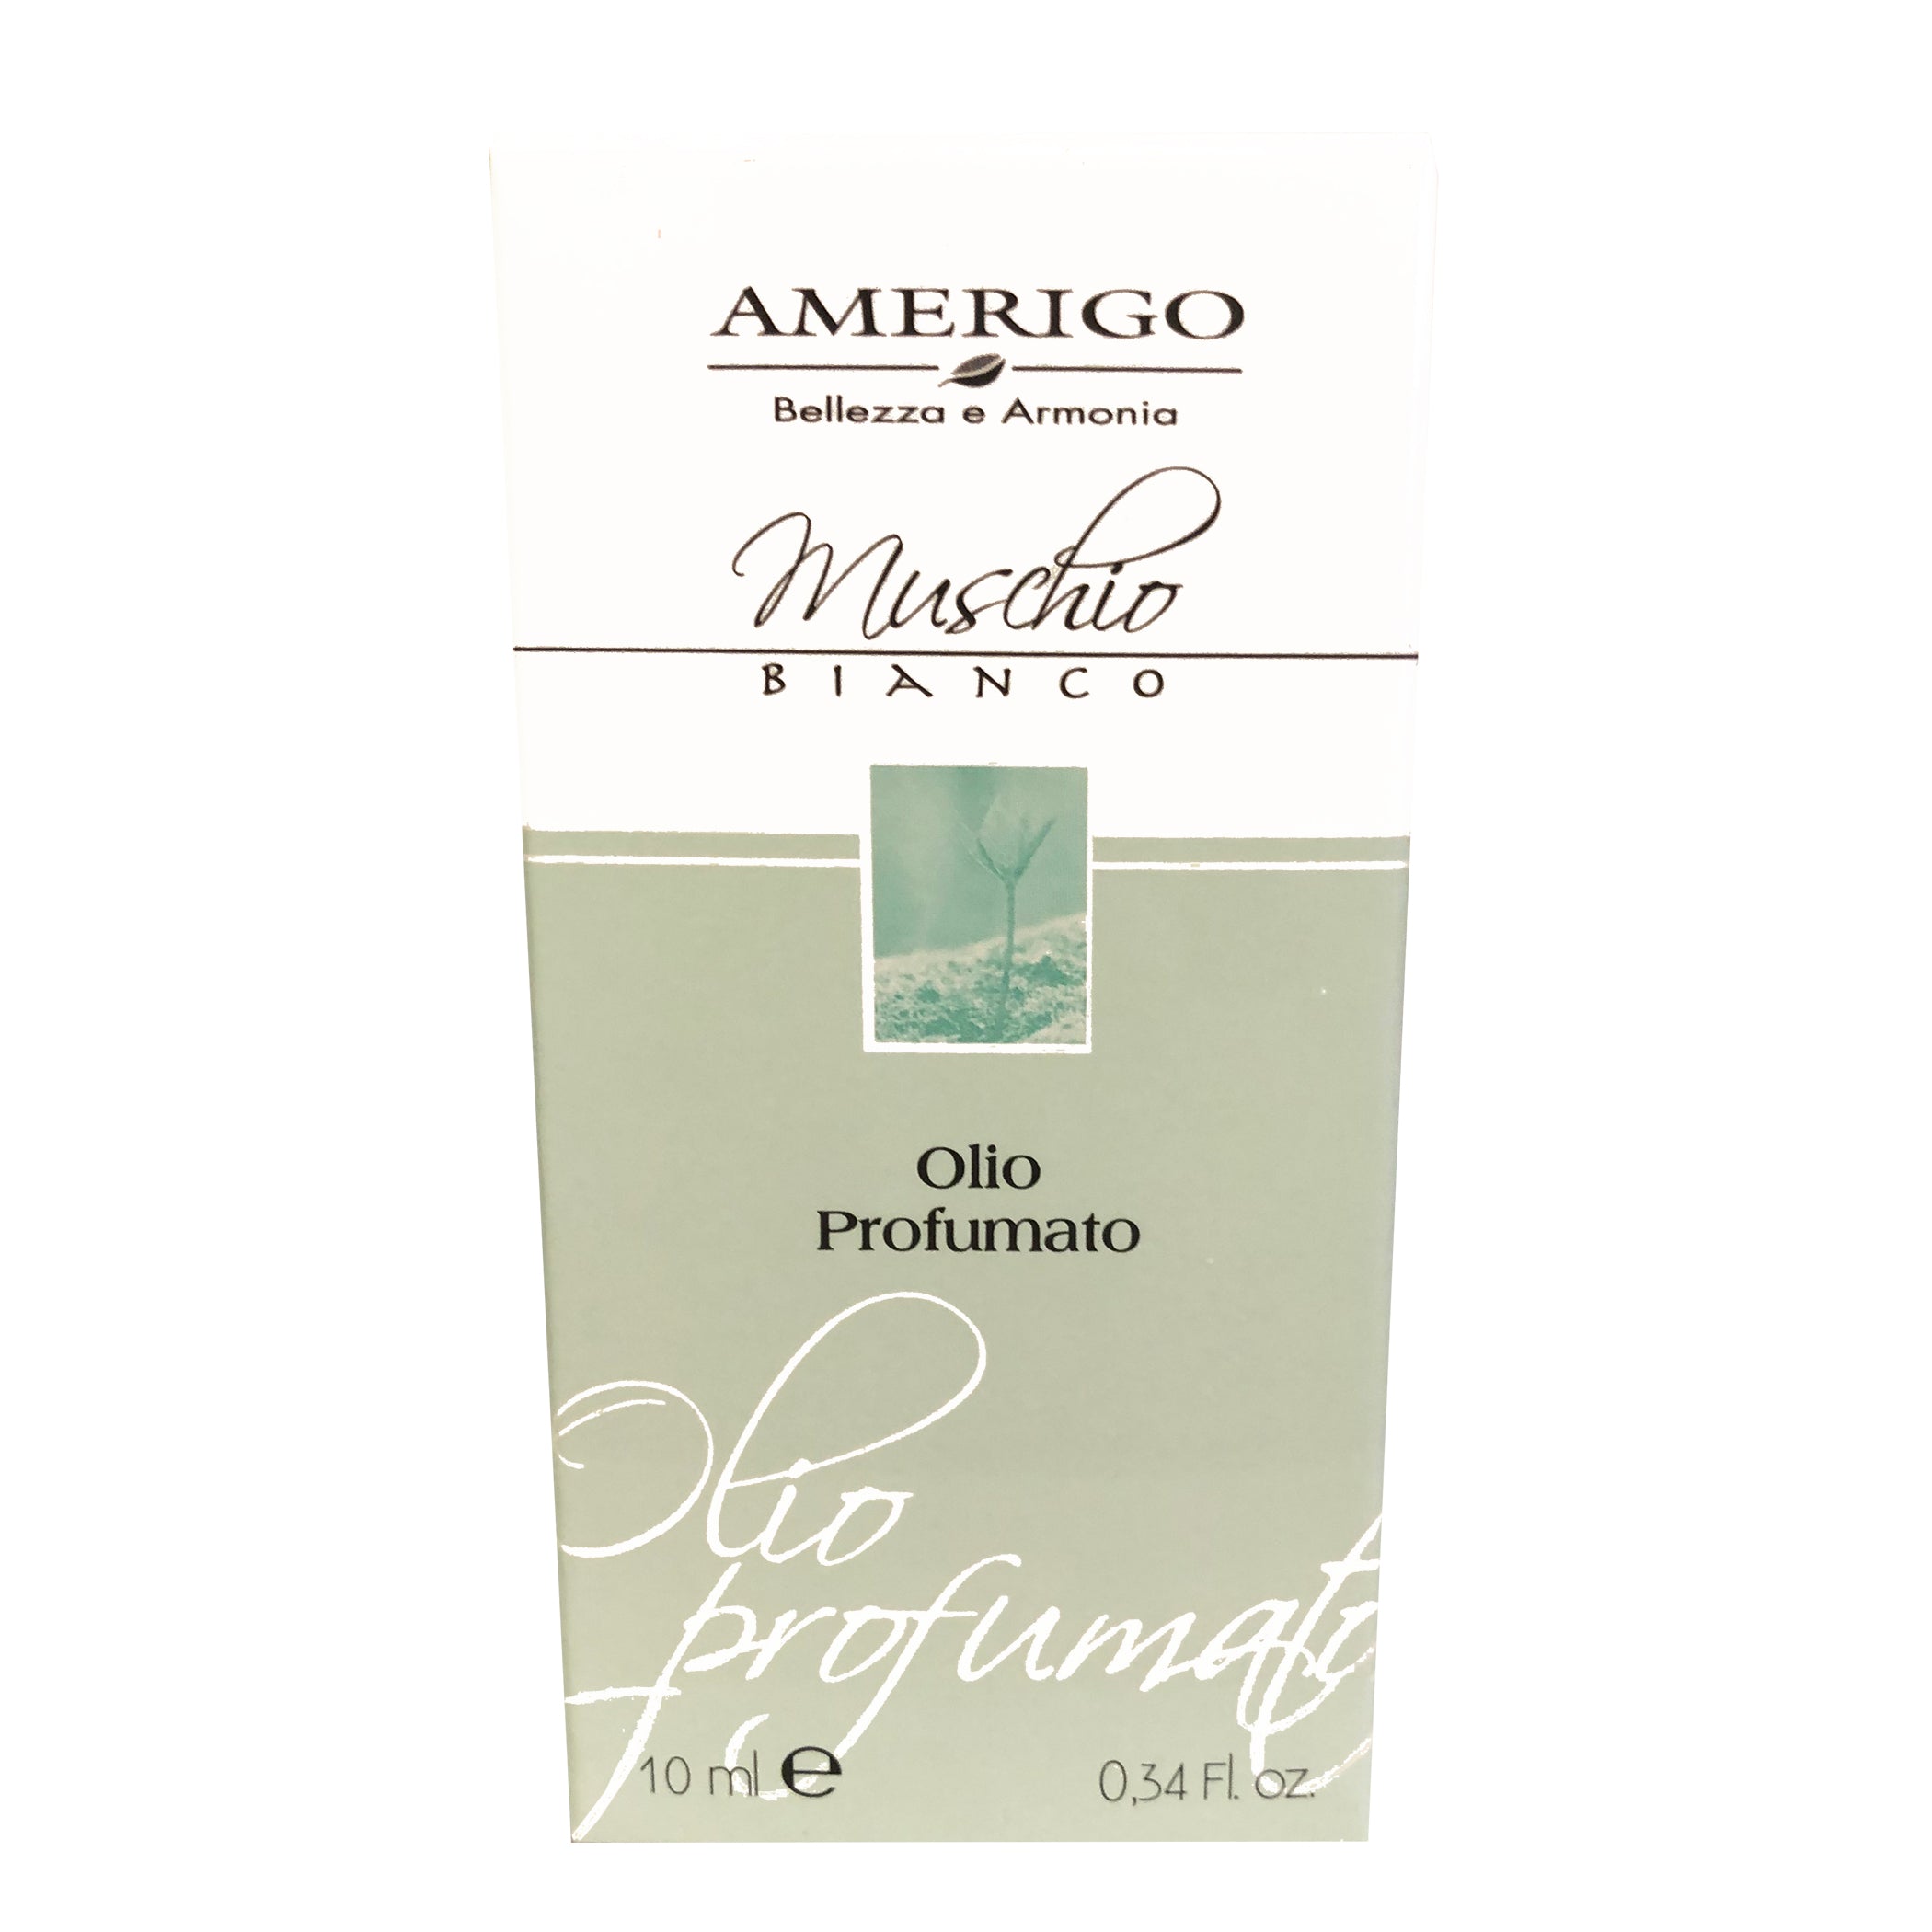 Prodotti Muschio Bianco - Amerigo, Erboristeria Armonie Naturali